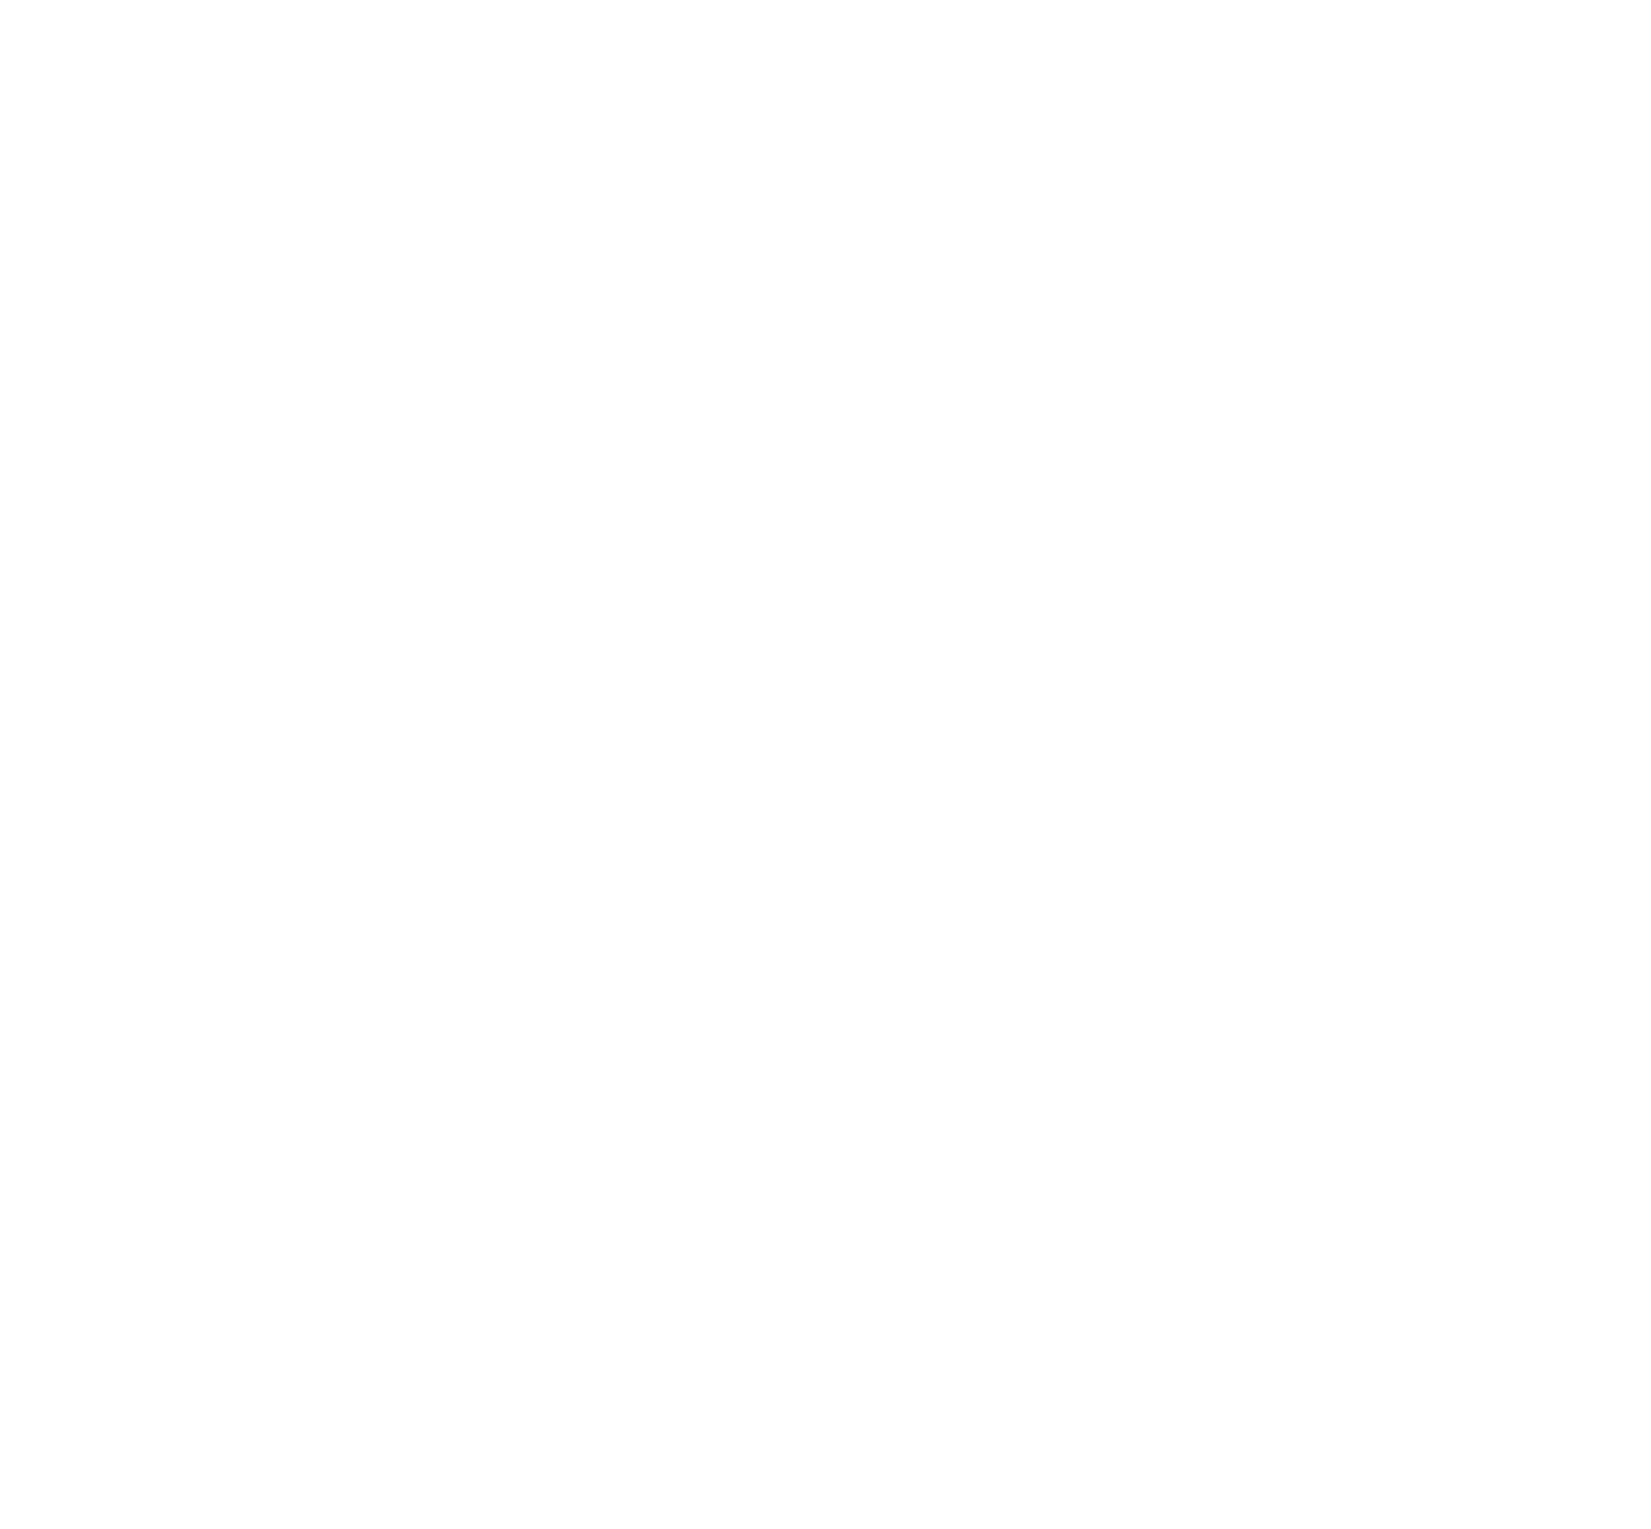 St Austell Golf Club in Cornwall